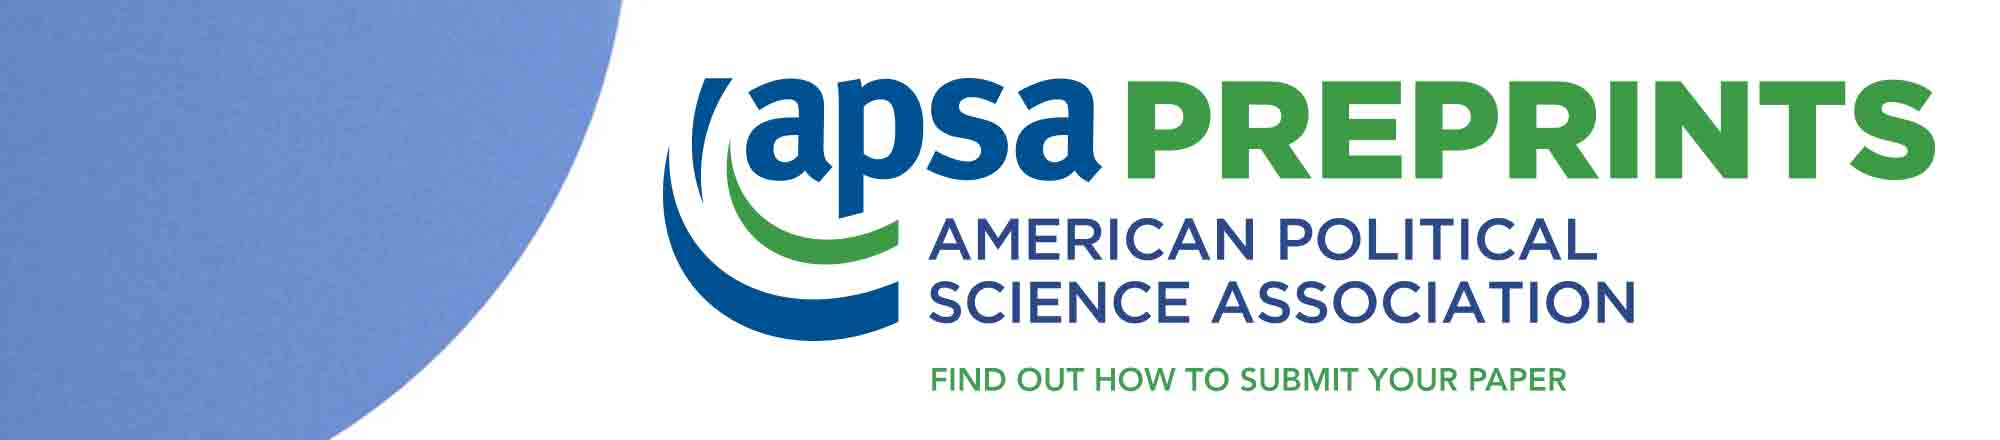 APSA Preprints banner - submit